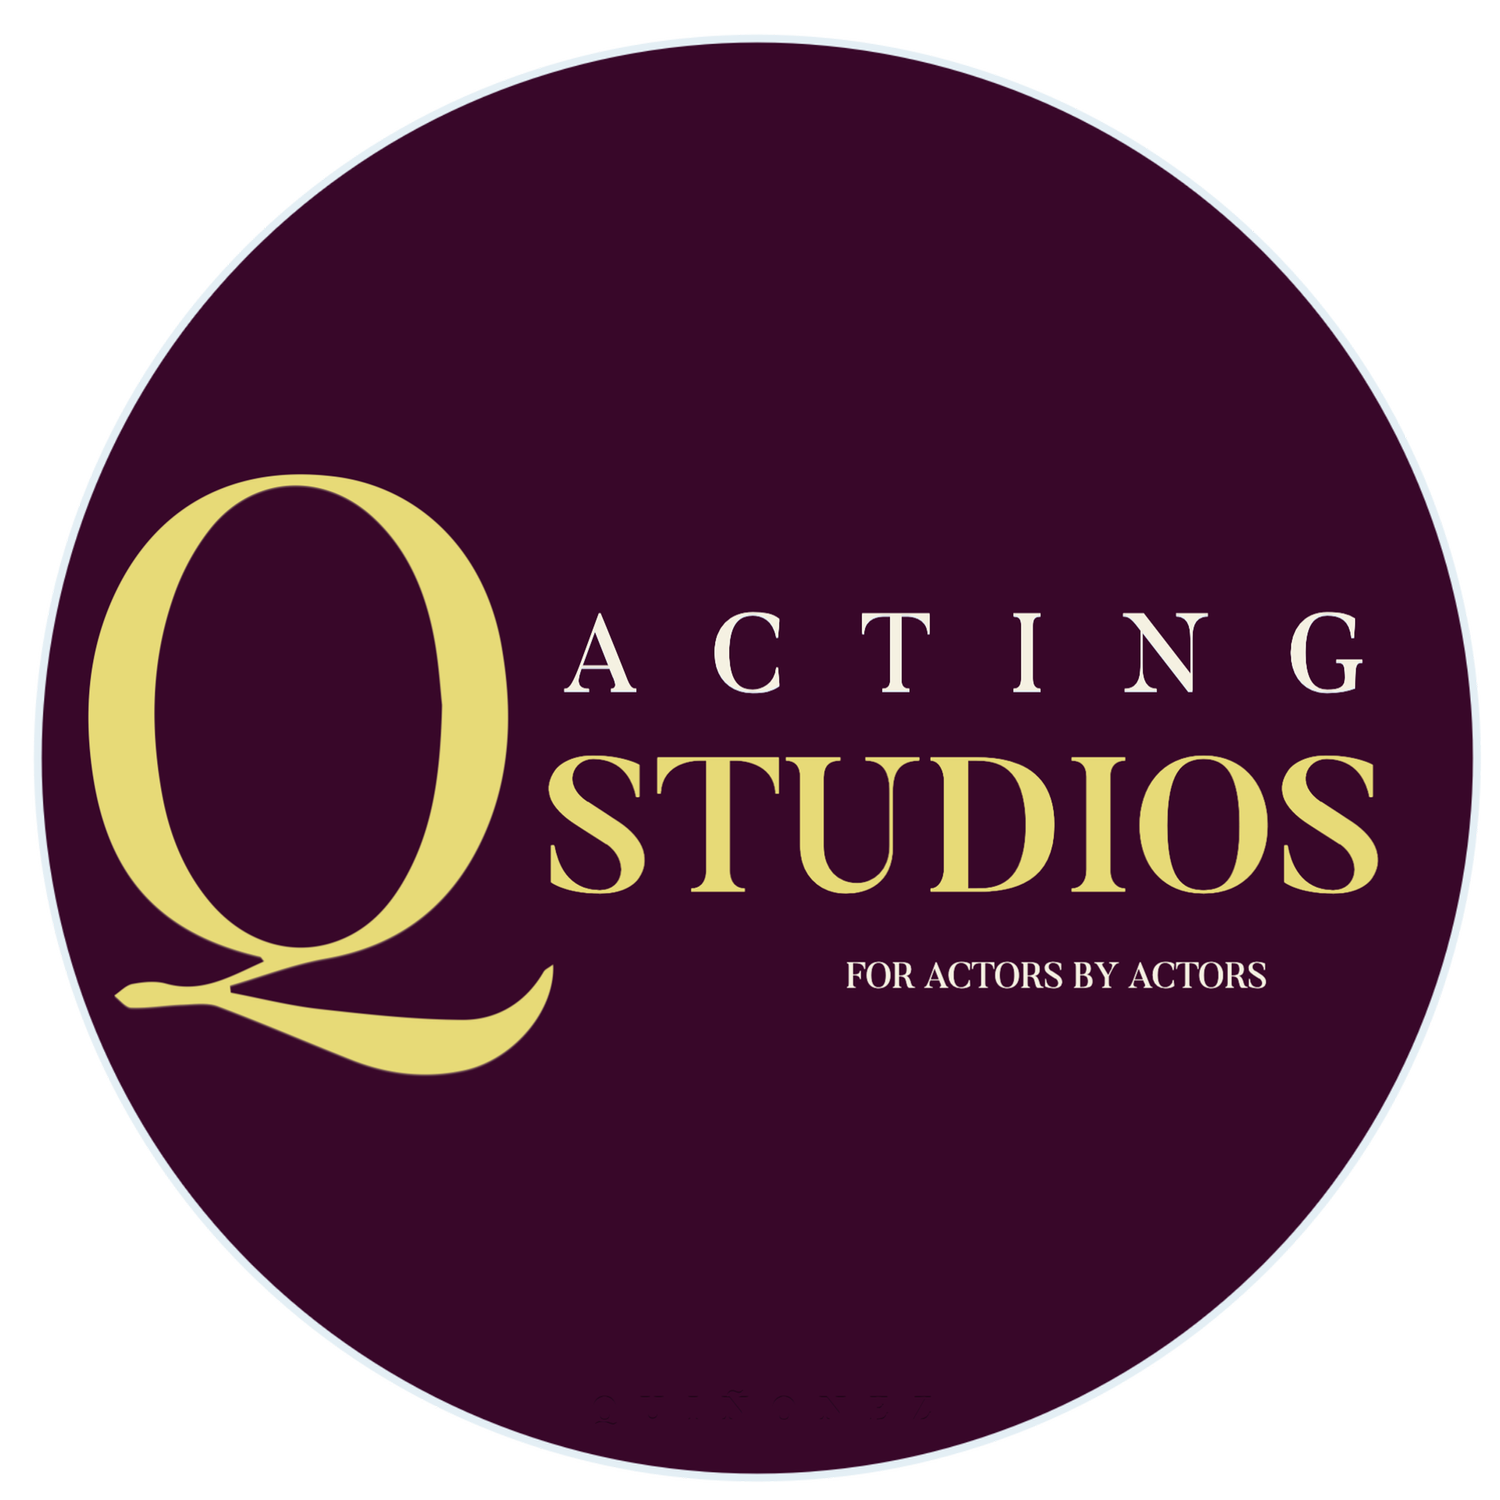 Q Acting Studios